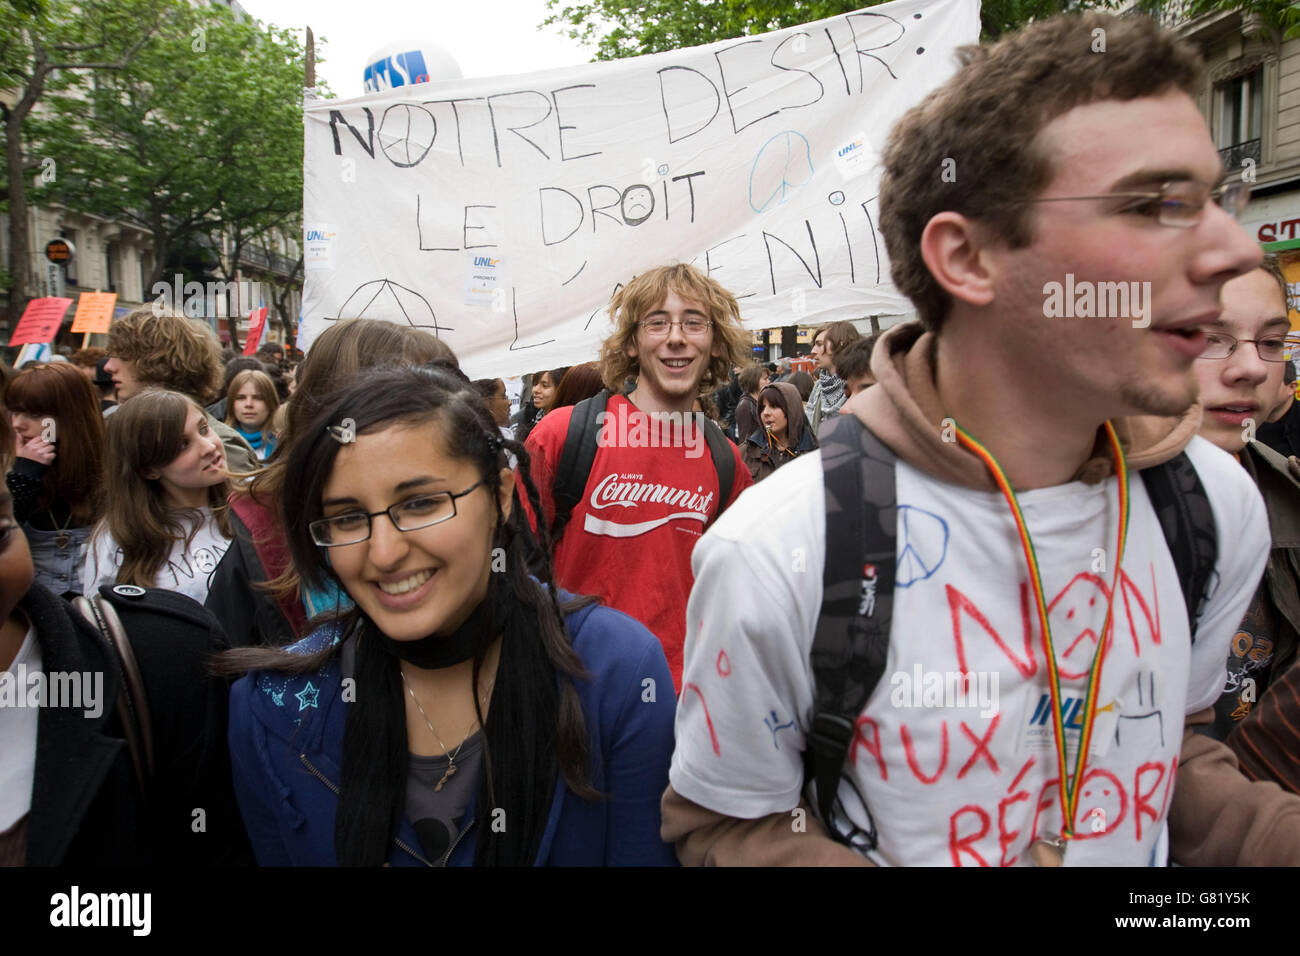 Alta scuola gli studenti prendono parte a maggio Giorno dimostrazione, 2008, Parigi, Francia. Banner legge 'nostro desir: il diritto a un futuro' Foto Stock